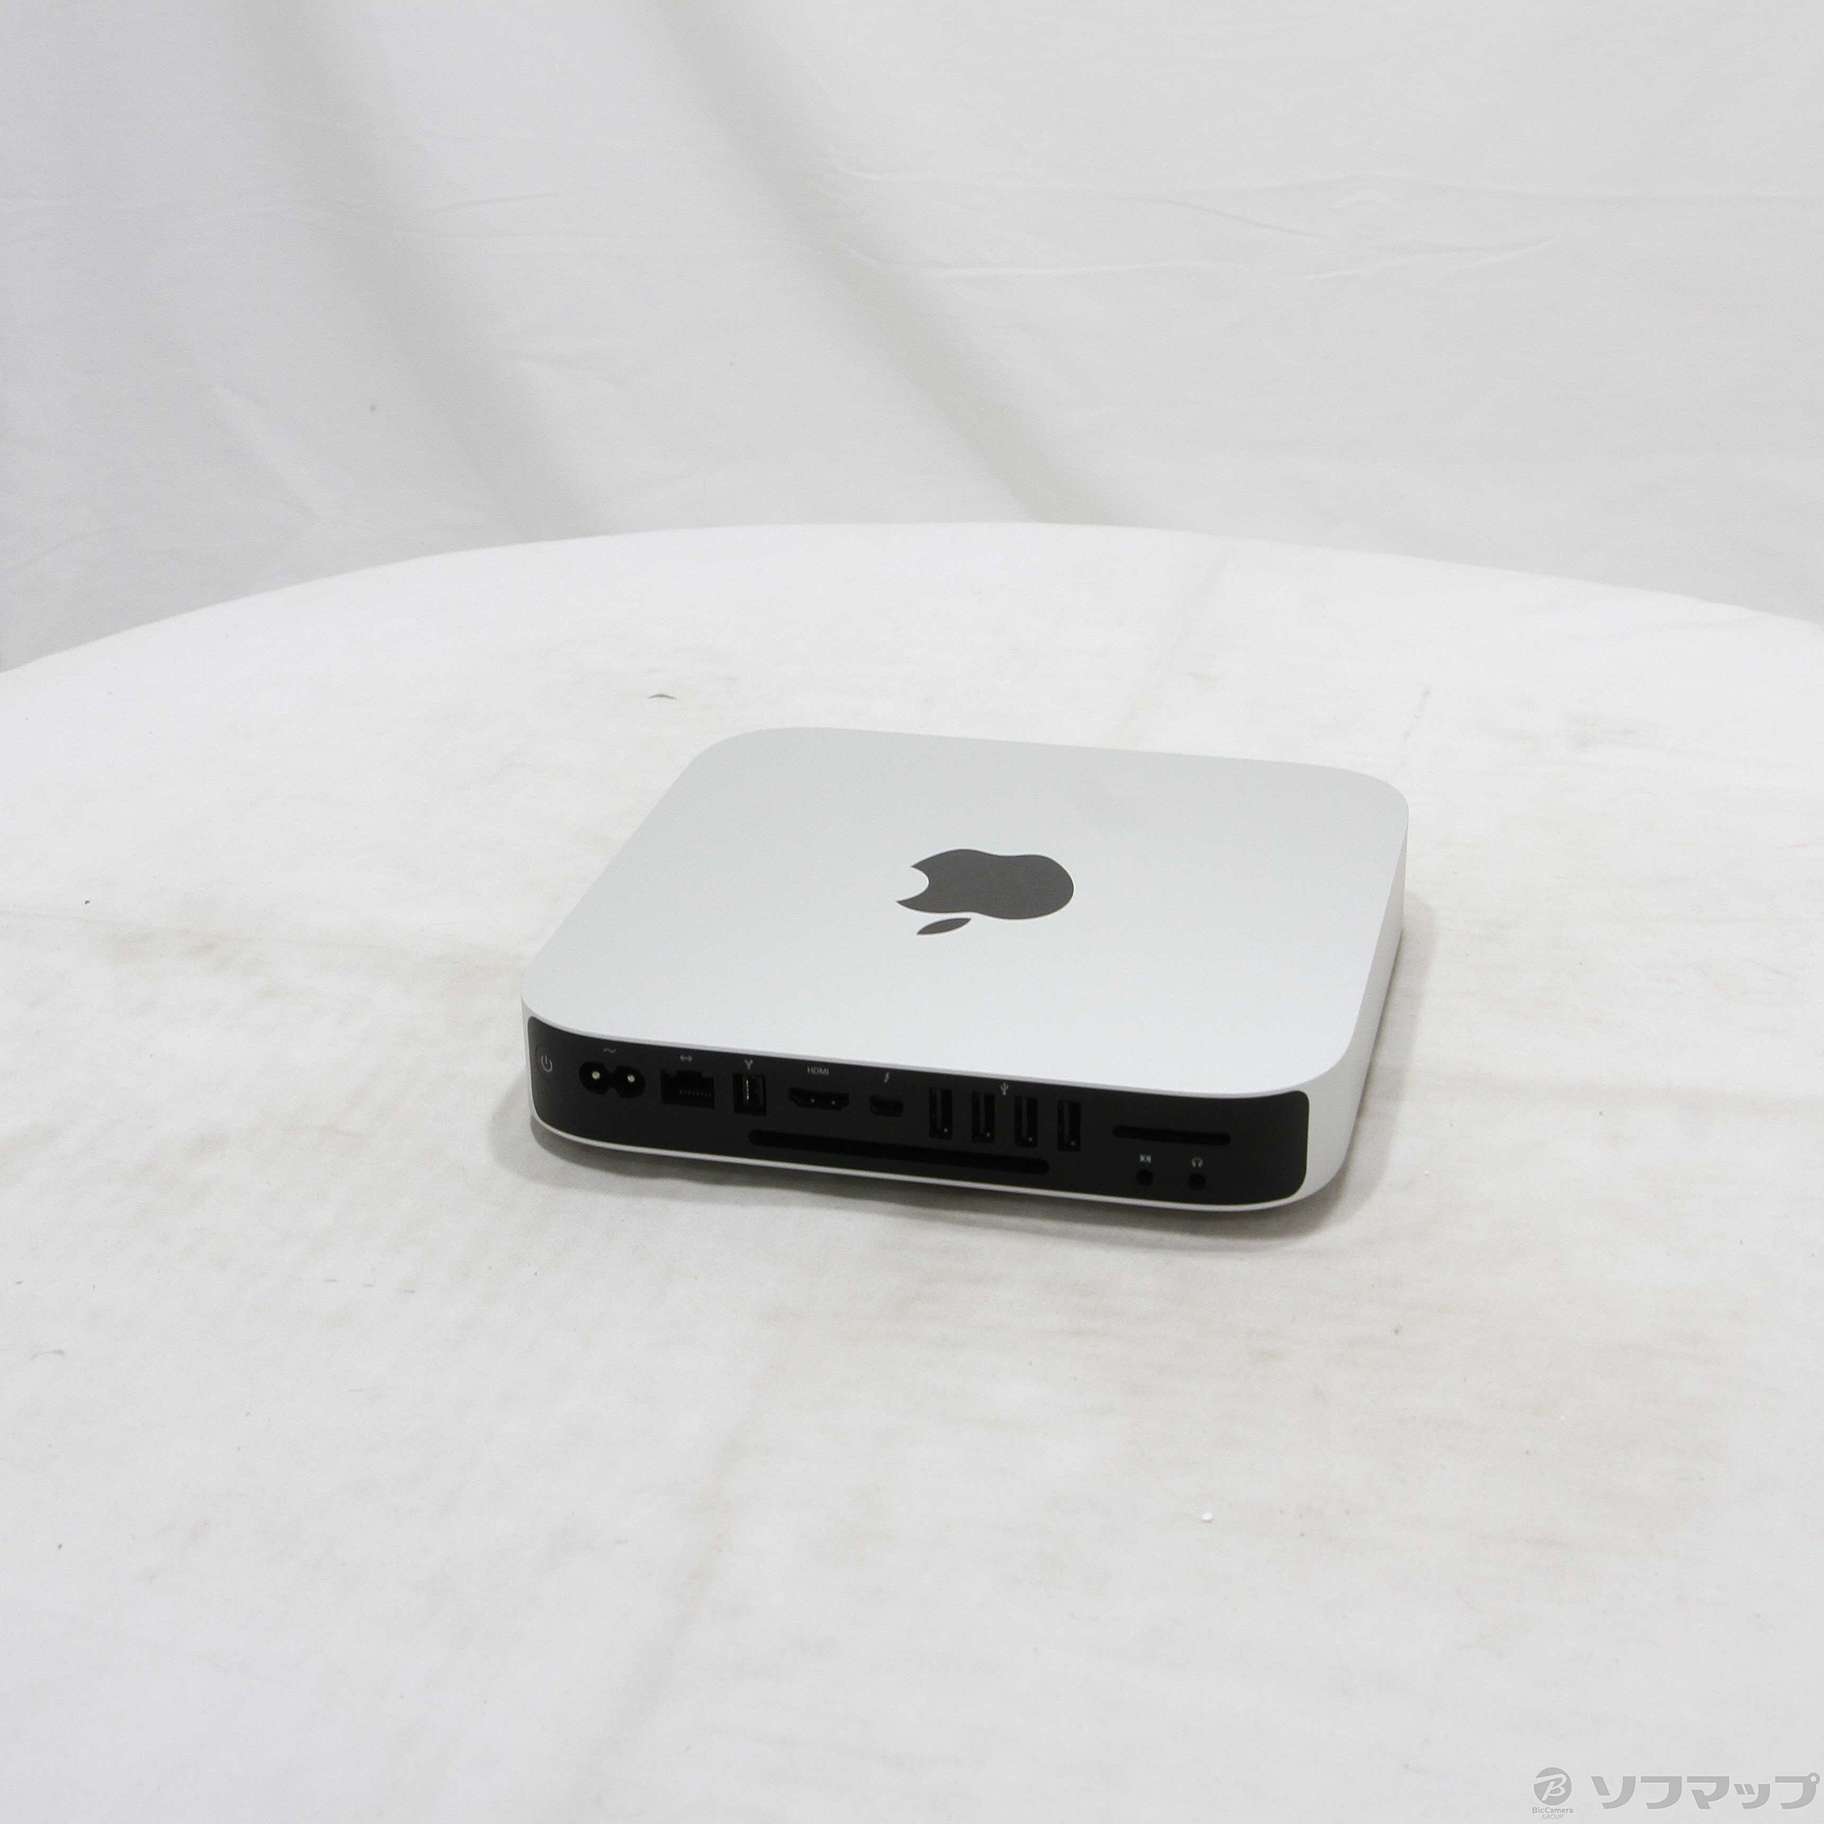 中古品〕 Mac mini Late 2012 MD387J／A Core_i5 2.5GHz 16GB HDD500GB